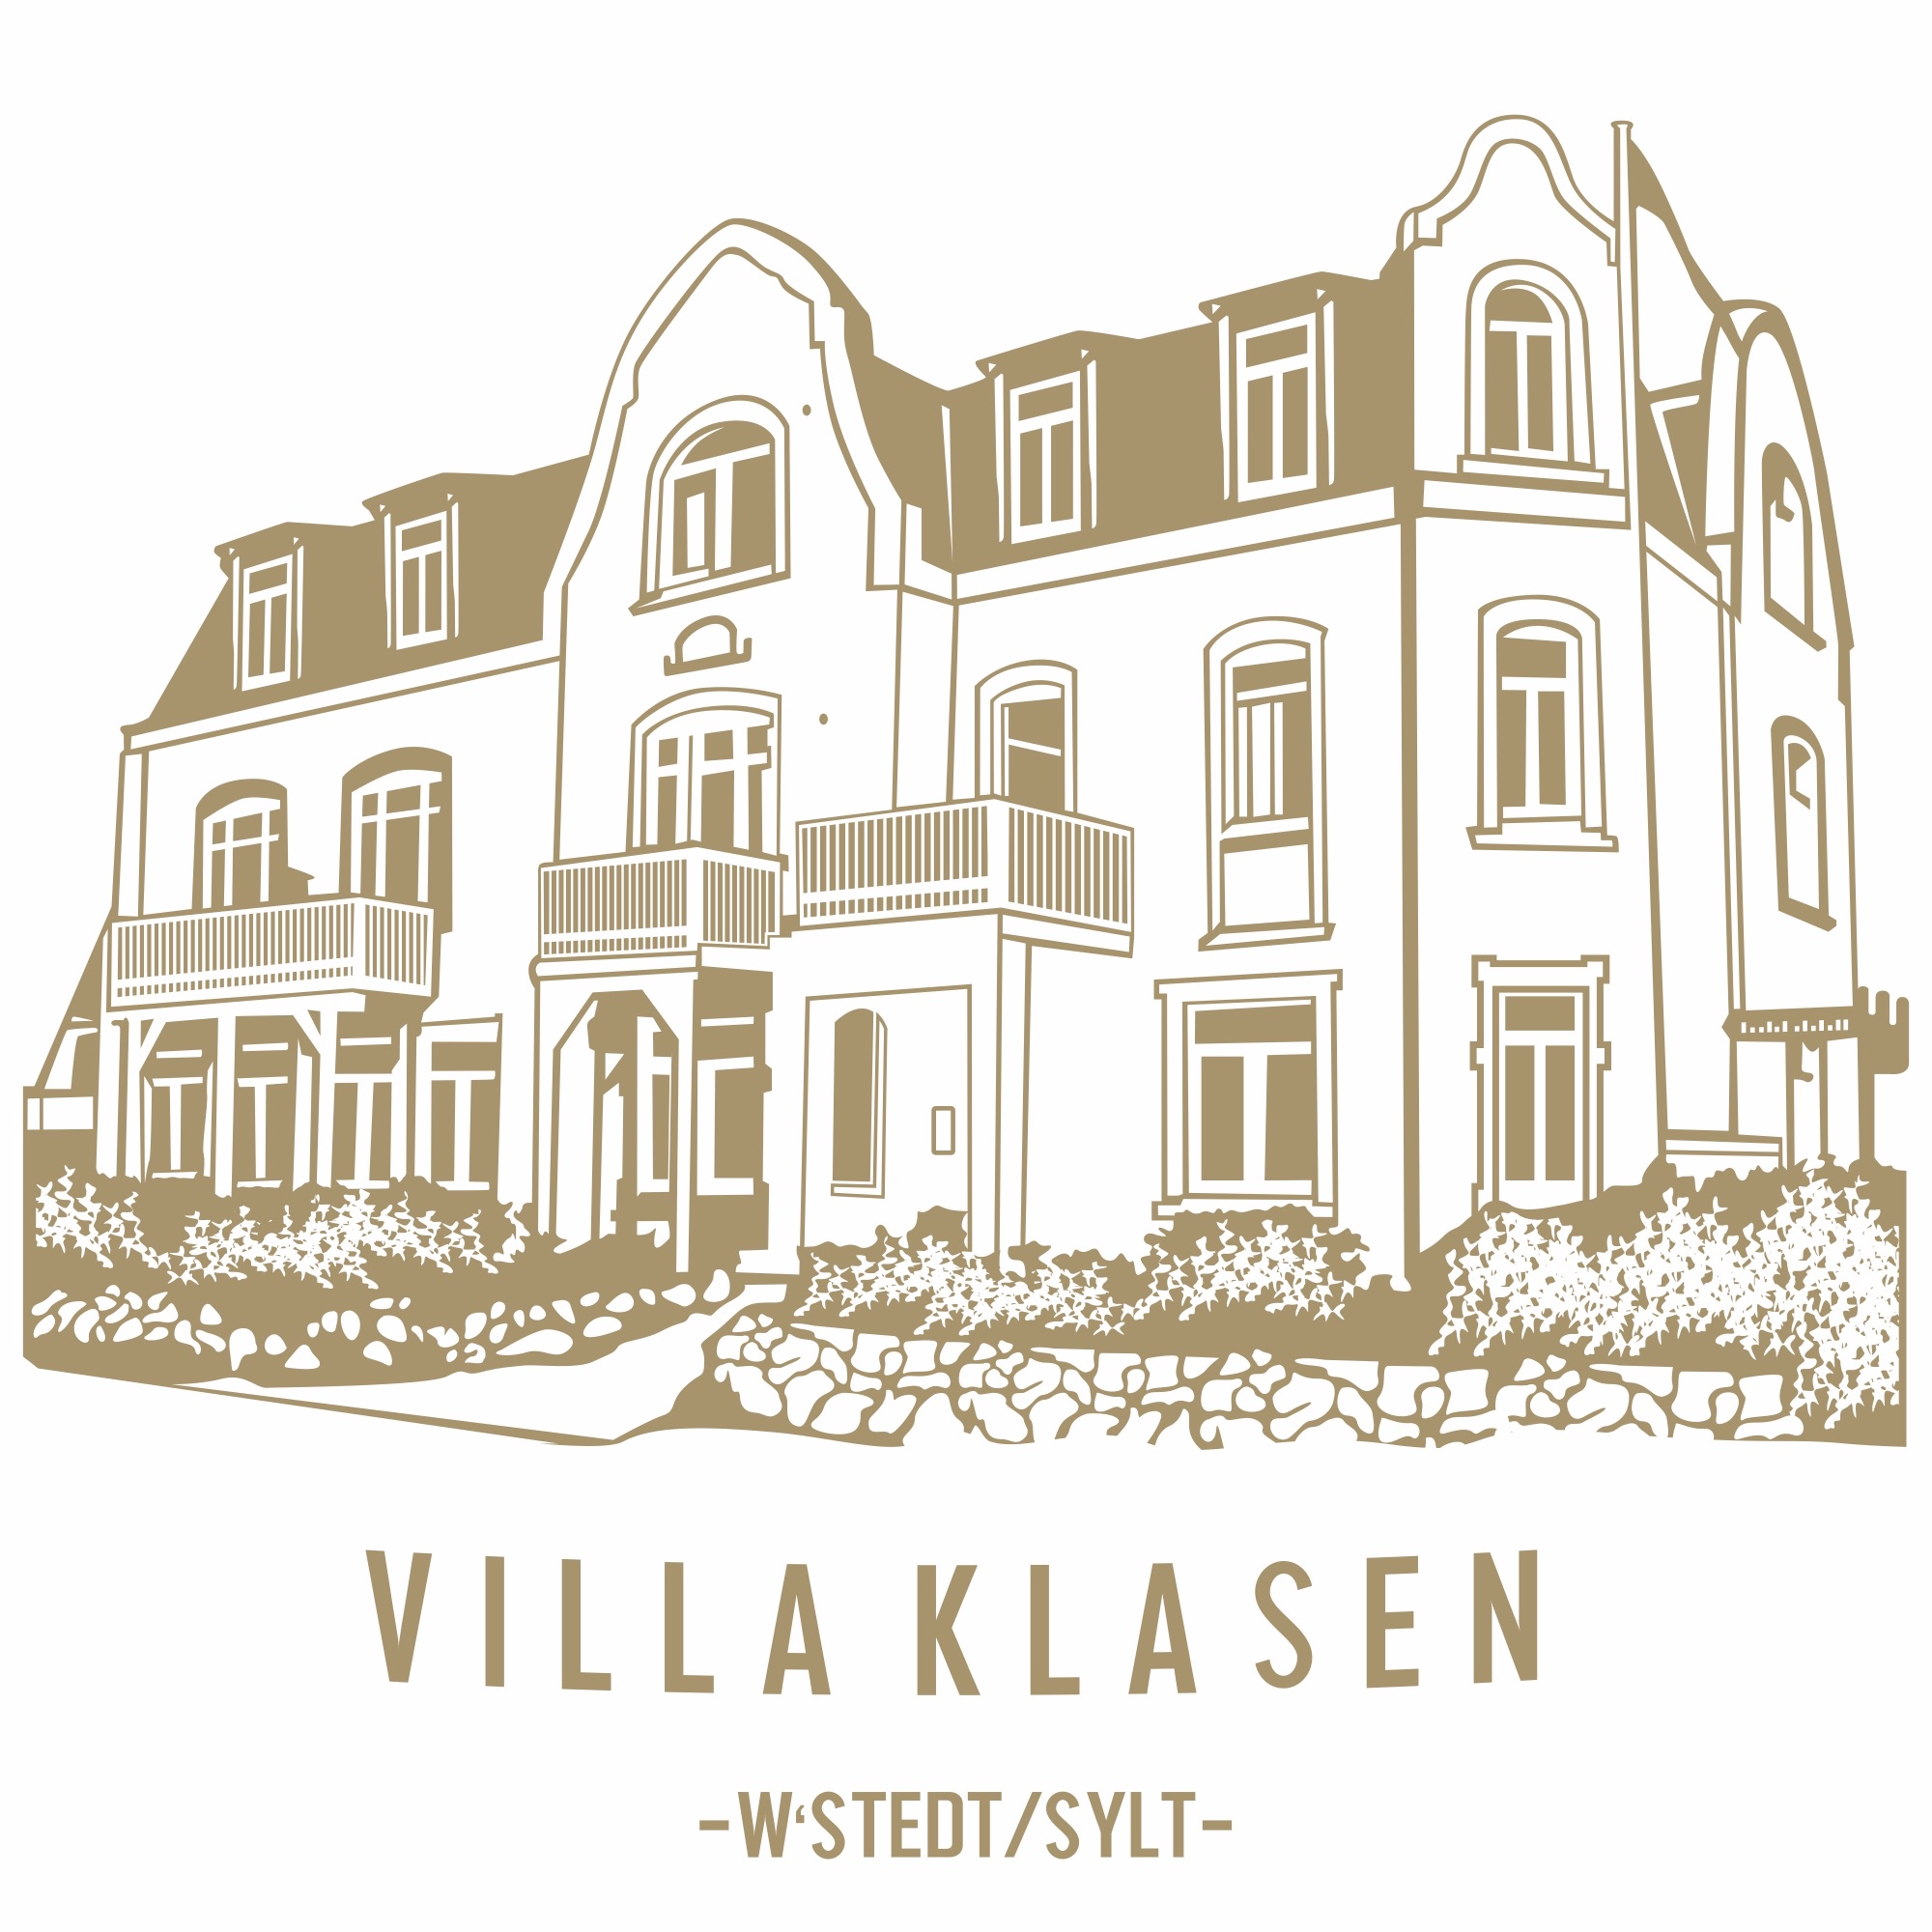 Die Villa Klasen